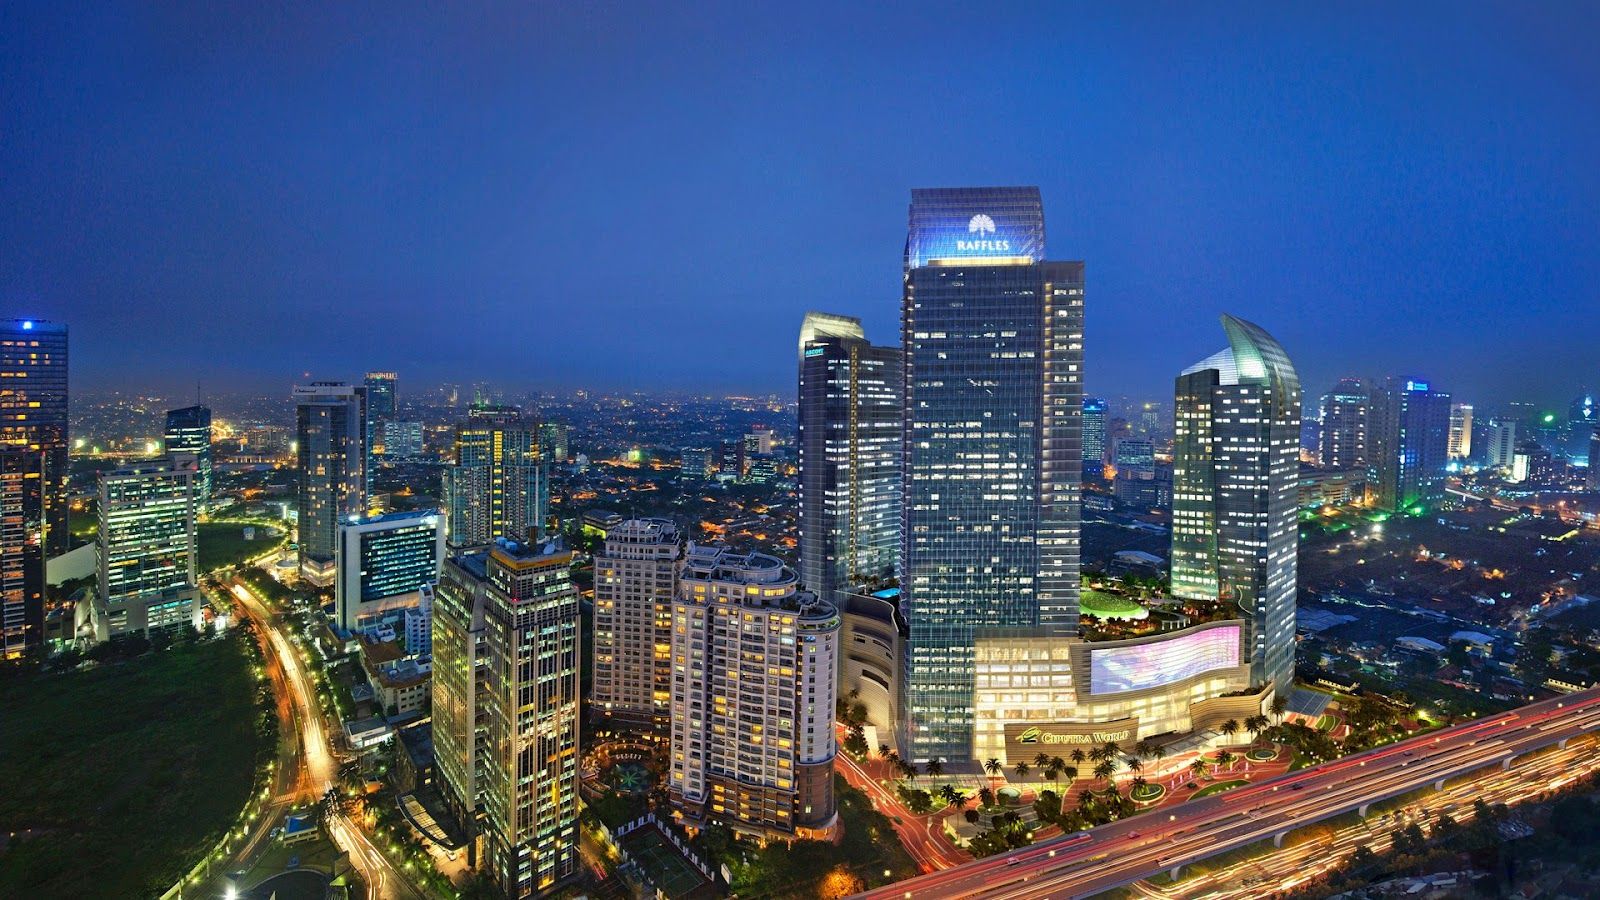 Bingung Menetap di Mana di Ibu Kota? Ini 5 Area Terbaik di Jakarta untuk Tinggal